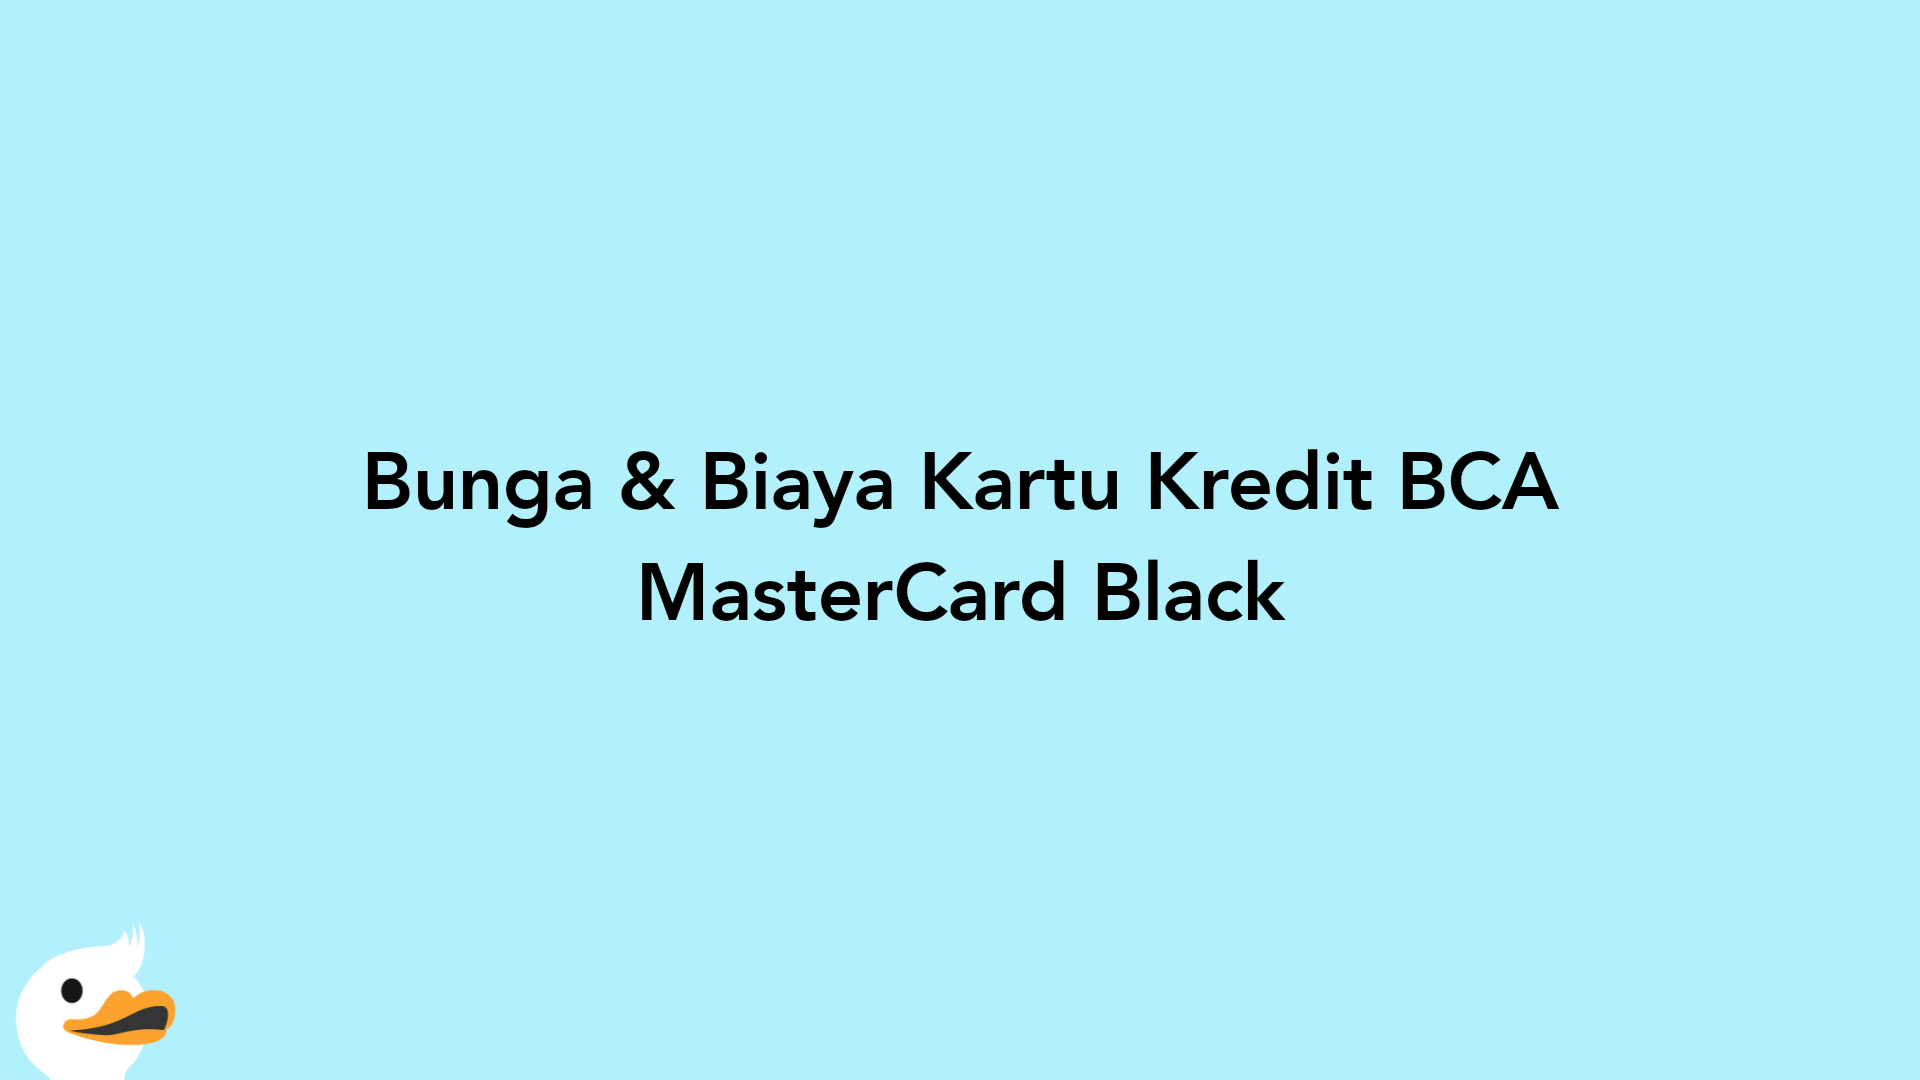 Bunga & Biaya Kartu Kredit BCA MasterCard Black